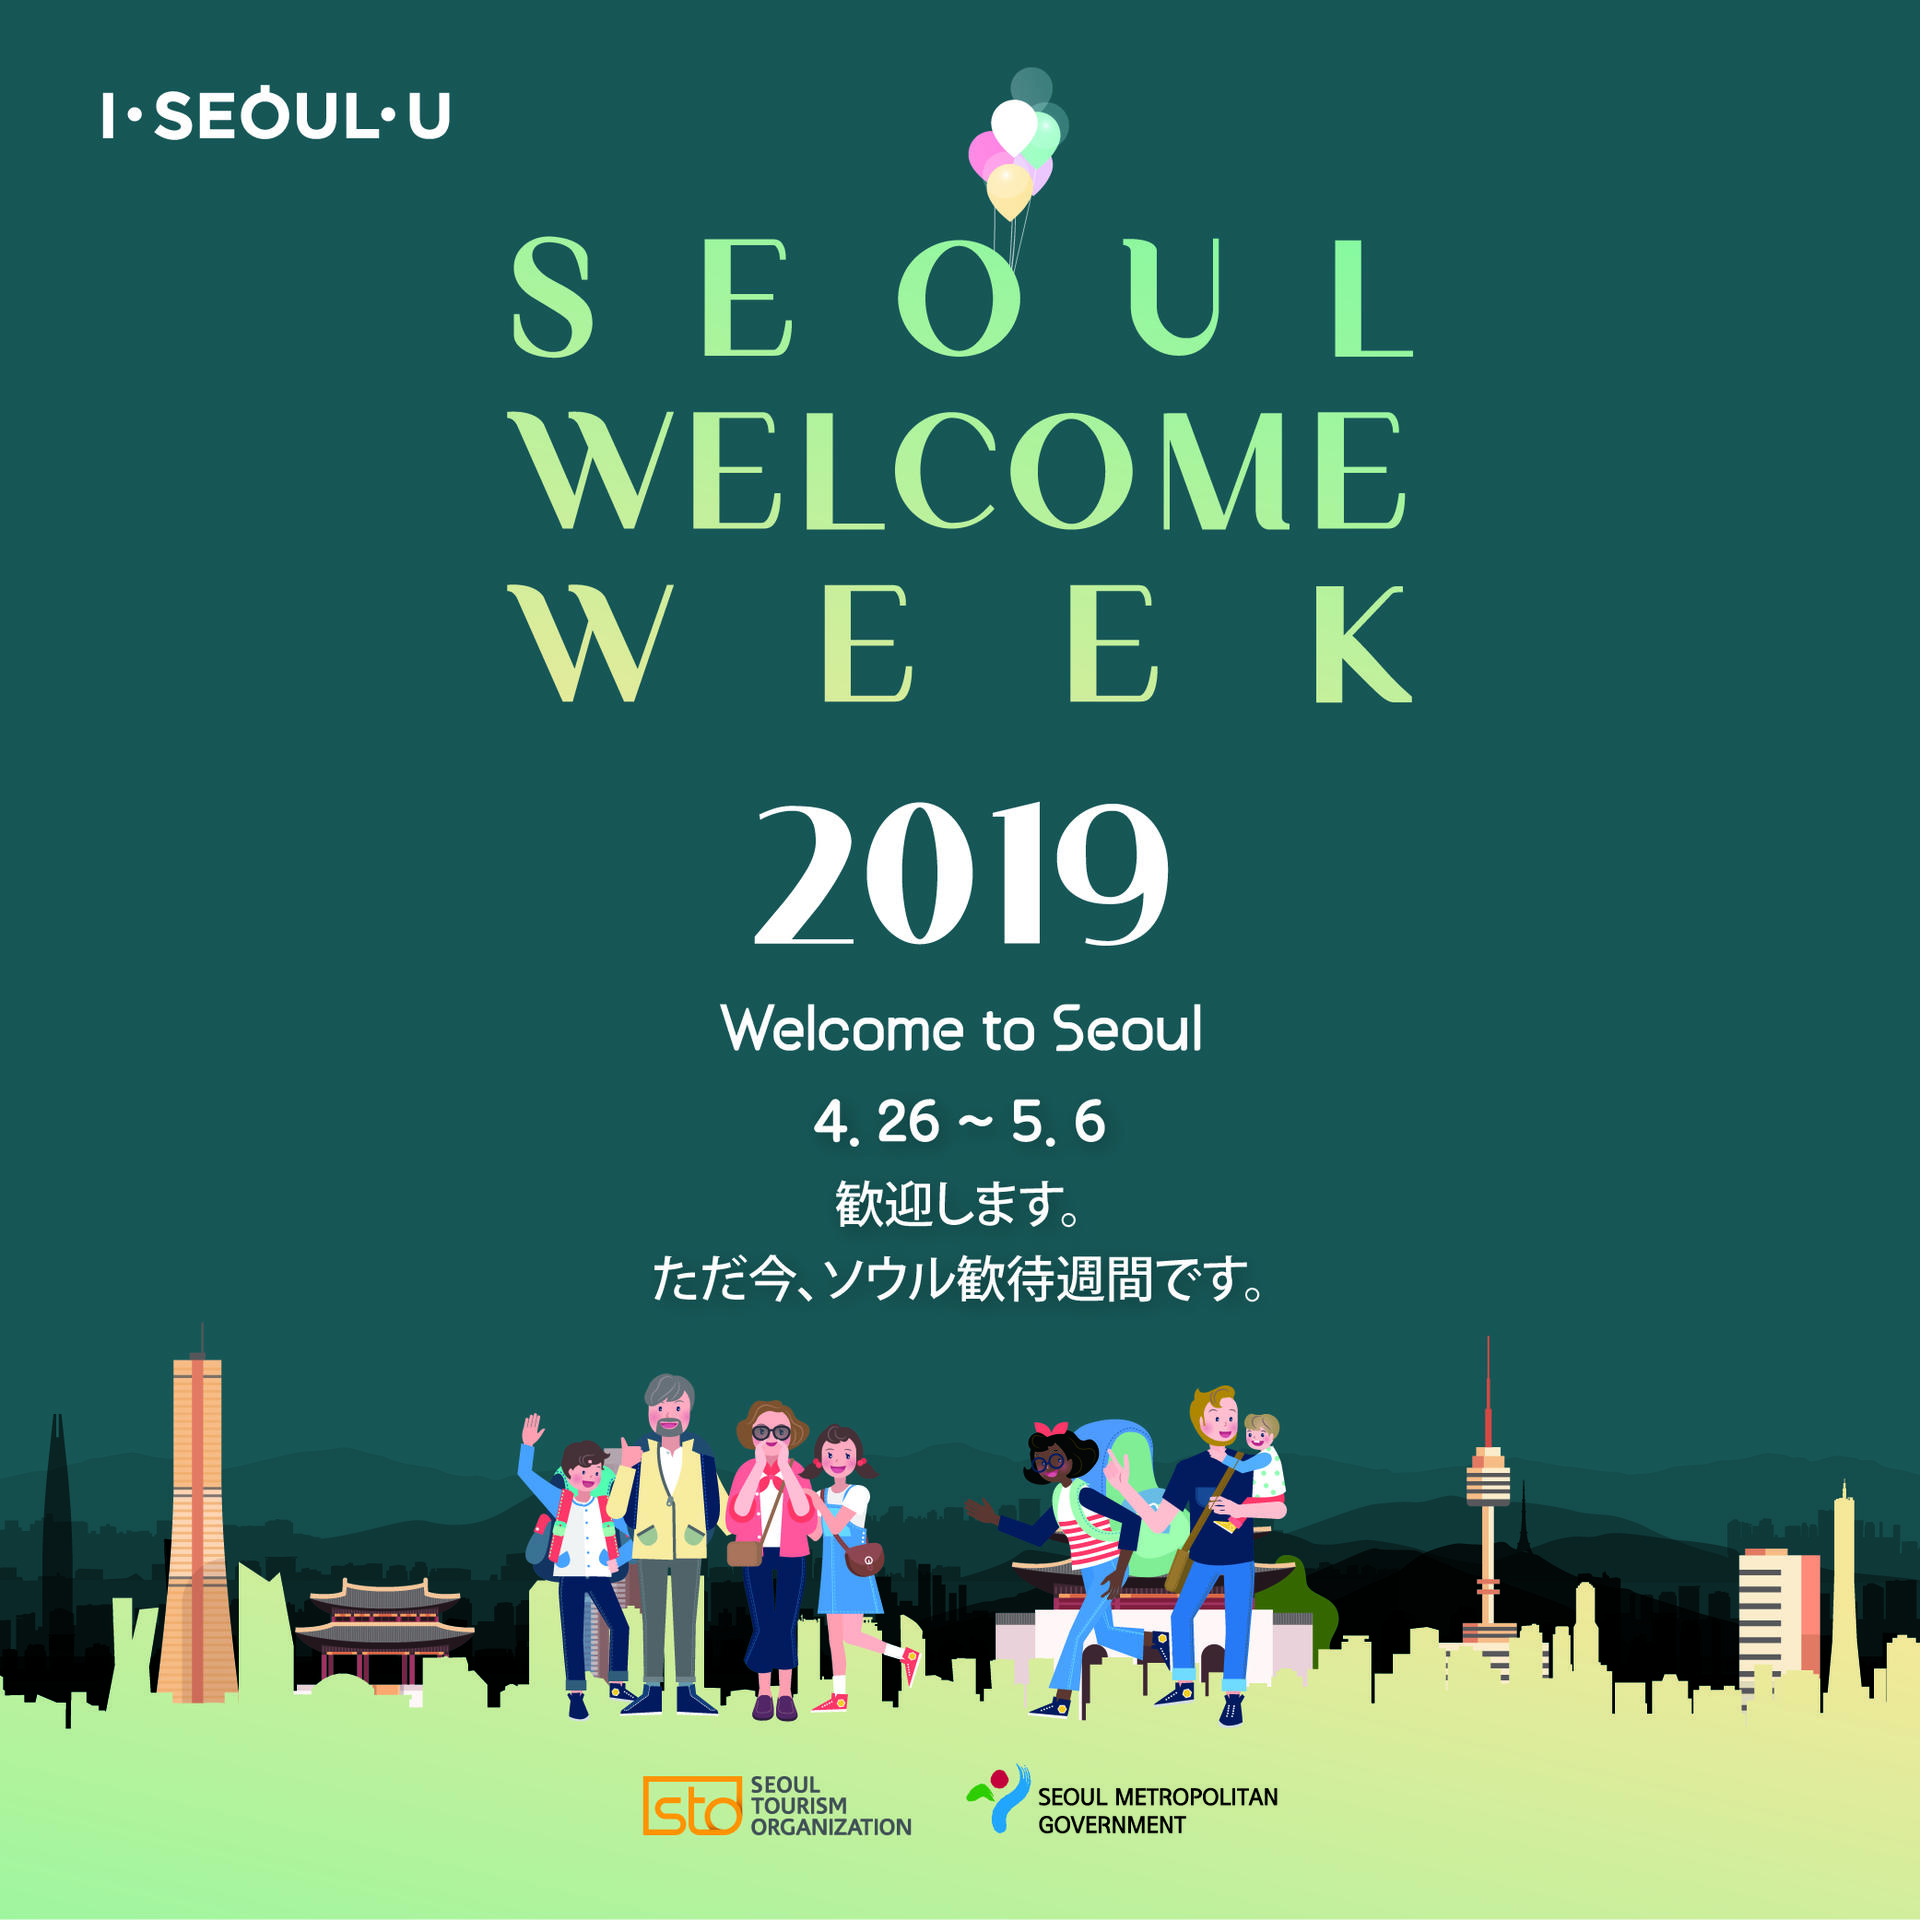 Seoul Welcome Week 19 ソウル歓待週間が再び戻って来ました Welcome To Seoul